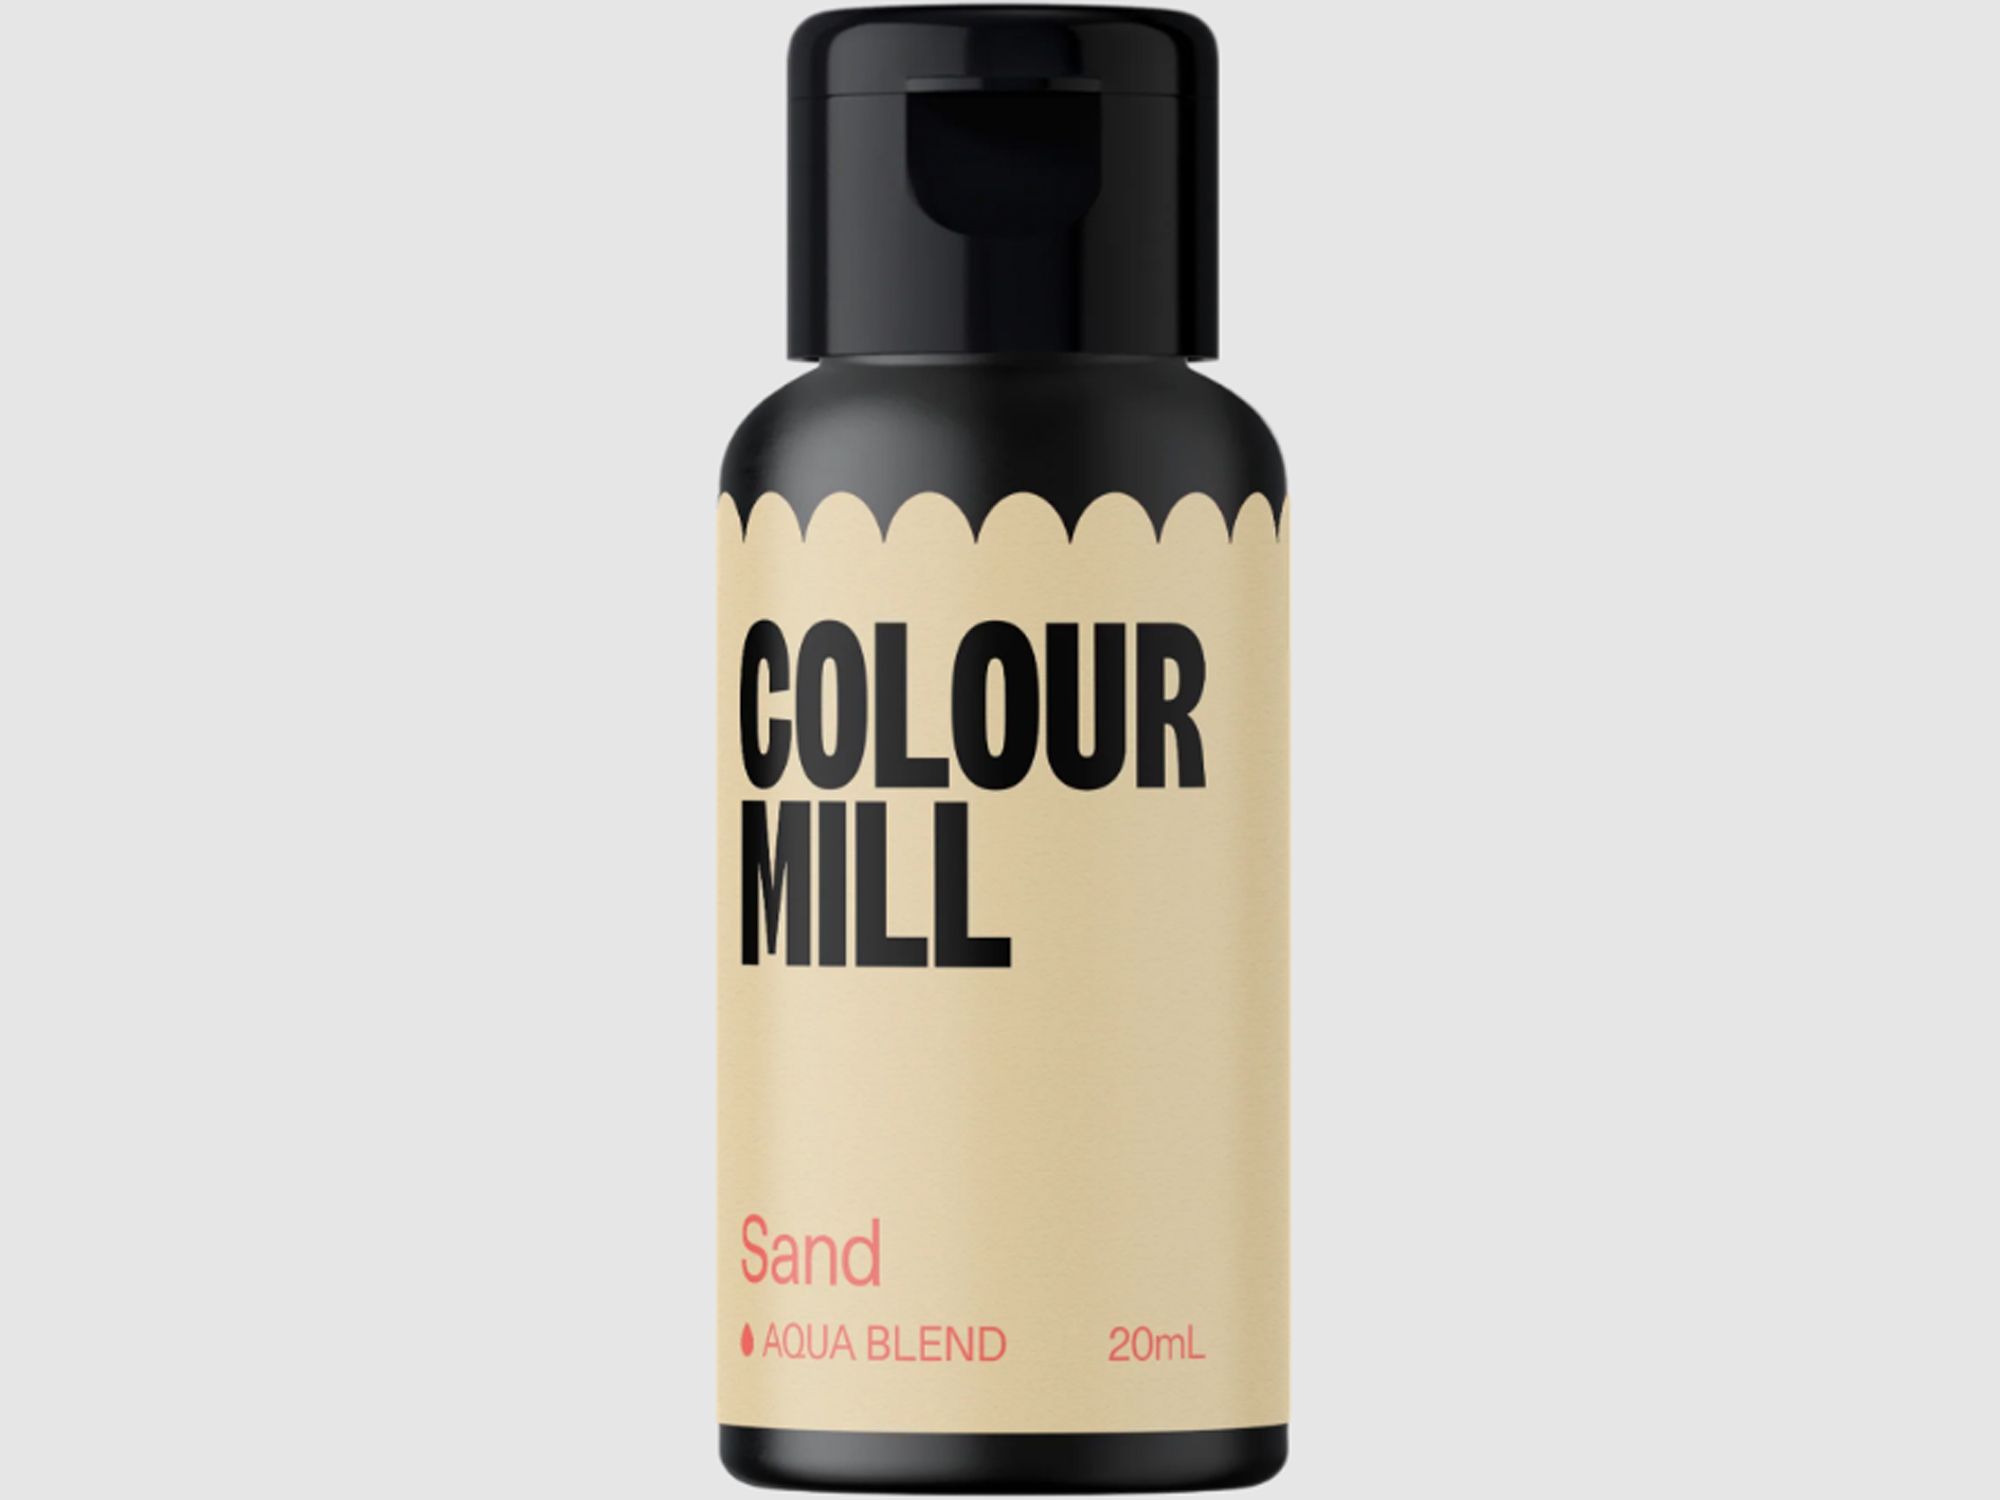 Colour Mill Sand (Aqua Blend) 20ml